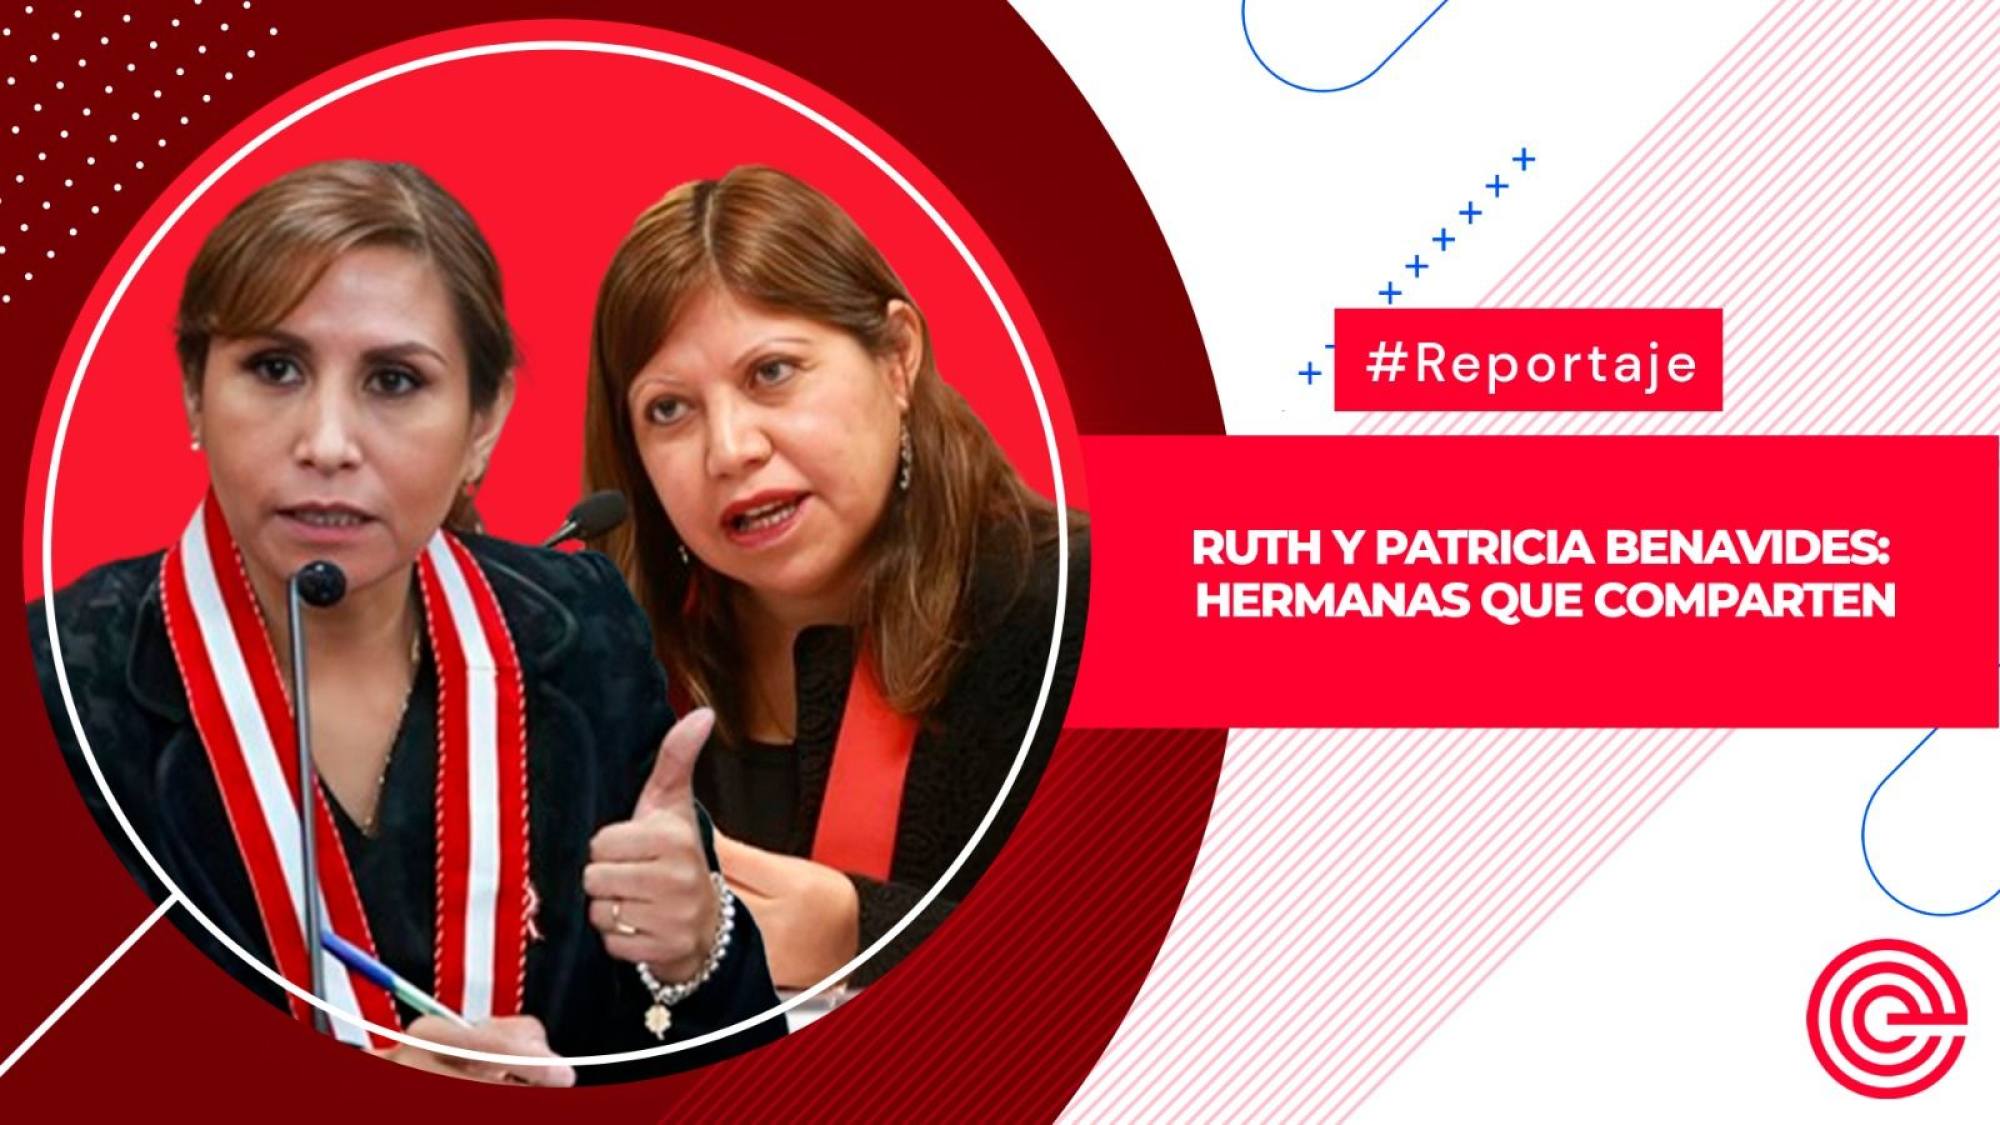 Ruth y Patricia Benavides: hermanas que comparten, Epicentro TV